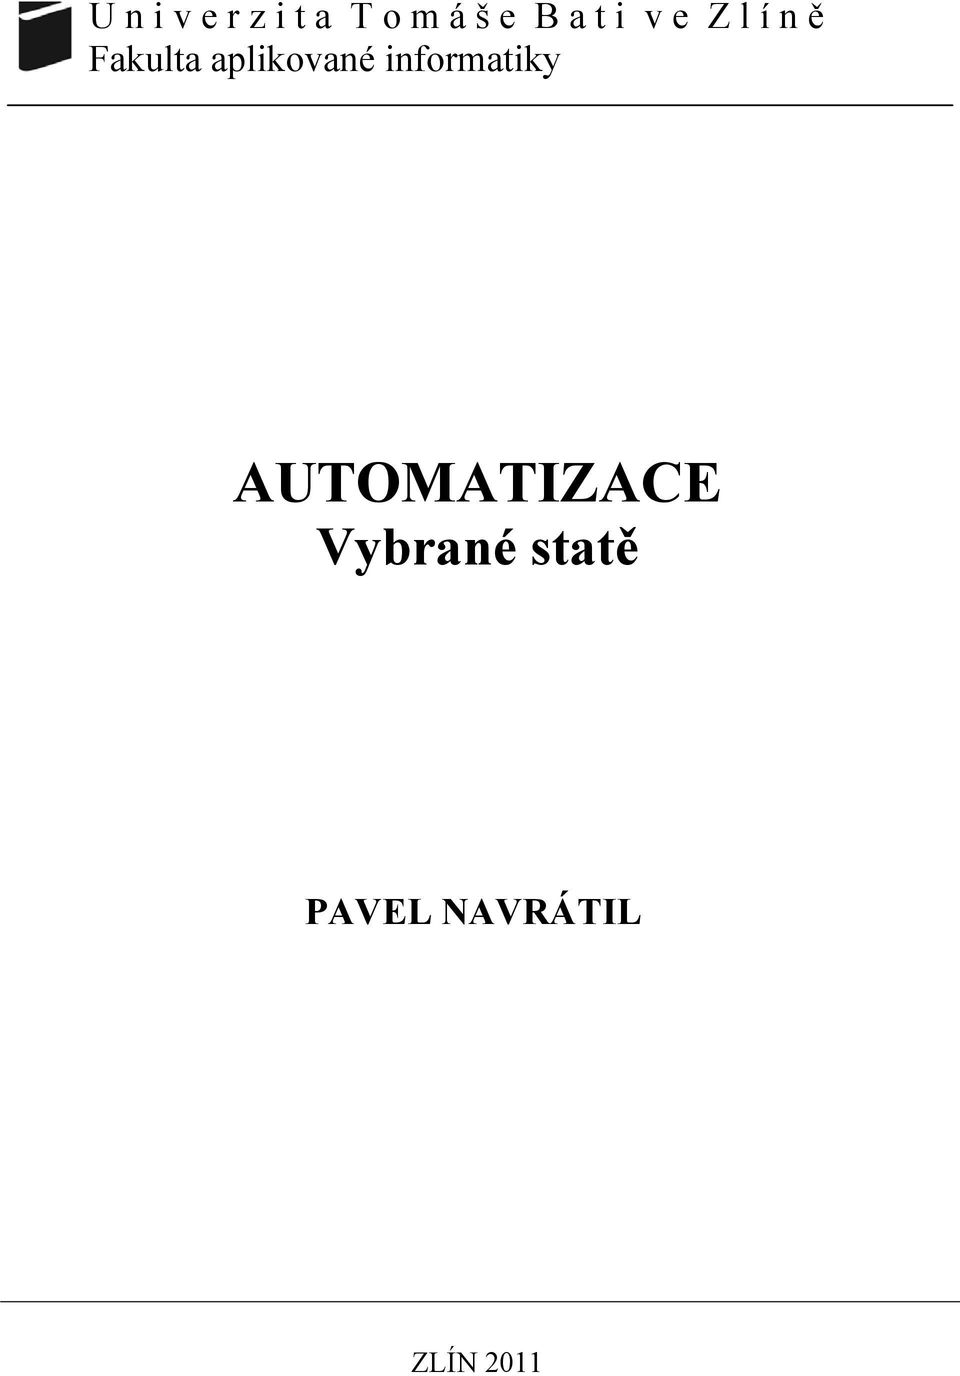 AUTOMATIZACE Vybrané statě PAVEL NAVRÁTIL - PDF Free Download